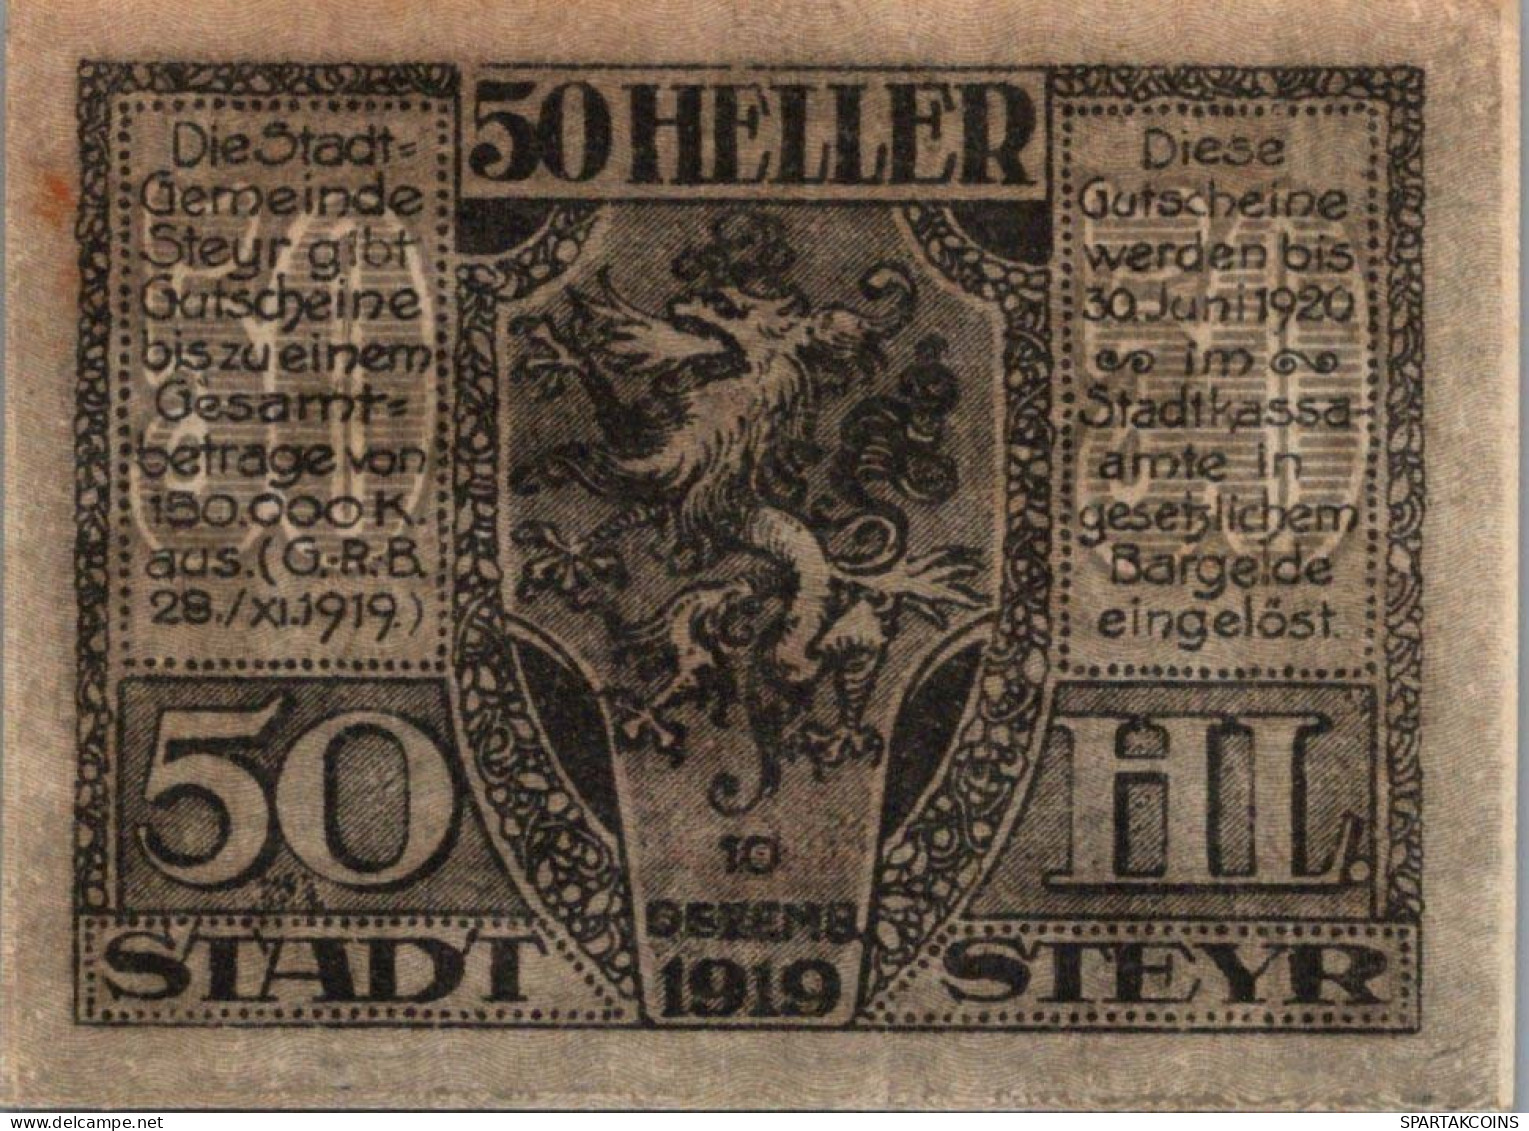 50 HELLER 1920 Stadt STEYR Oberösterreich Österreich Notgeld Banknote #PE842 - [11] Emissions Locales